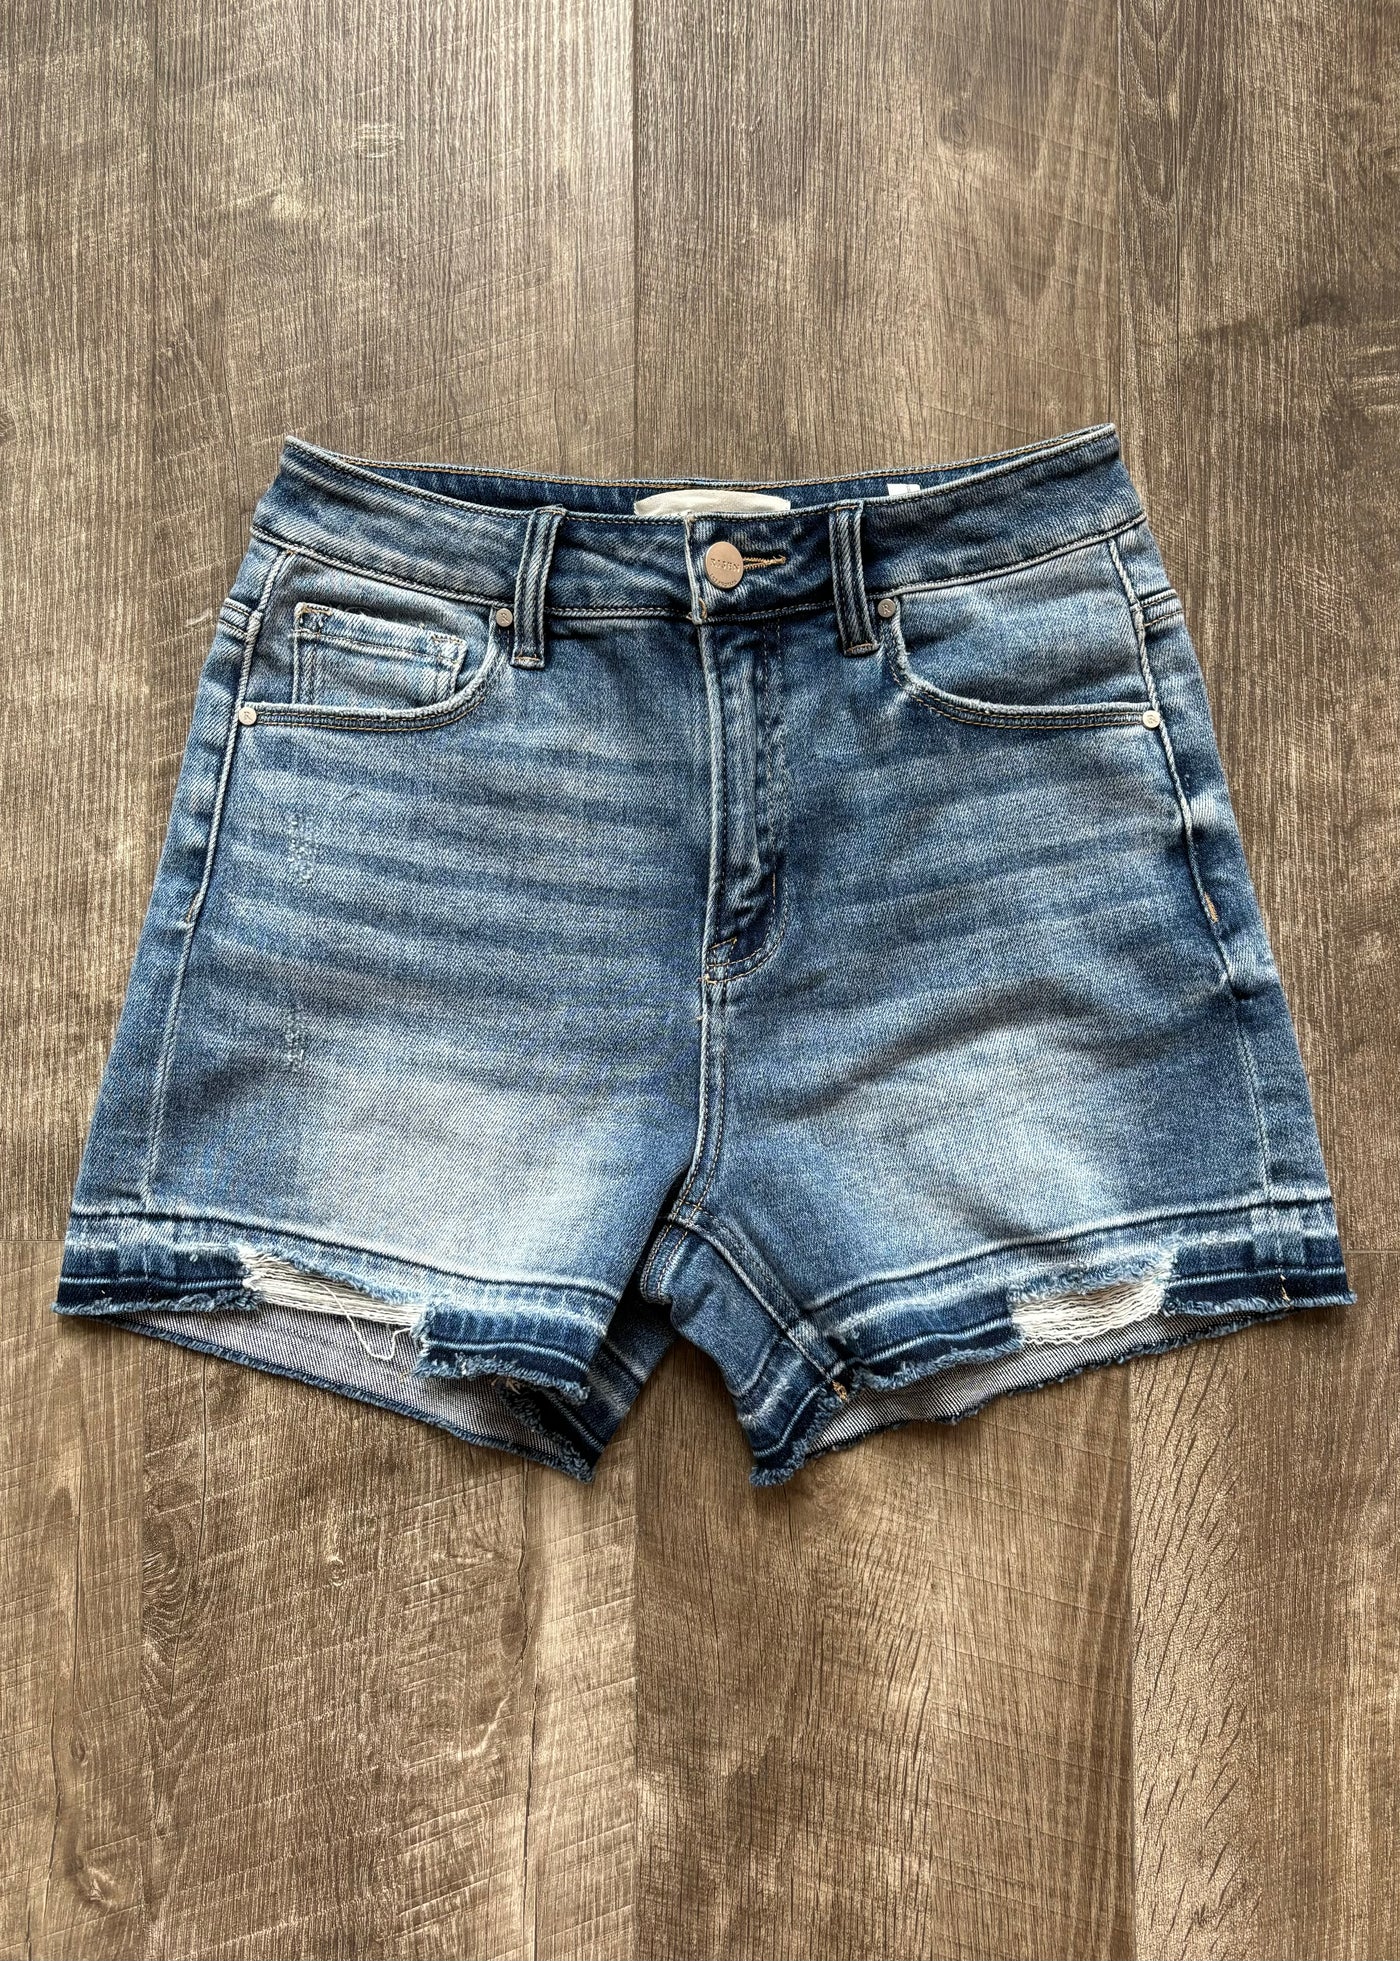 Favorite Option Denim Shorts- Medium